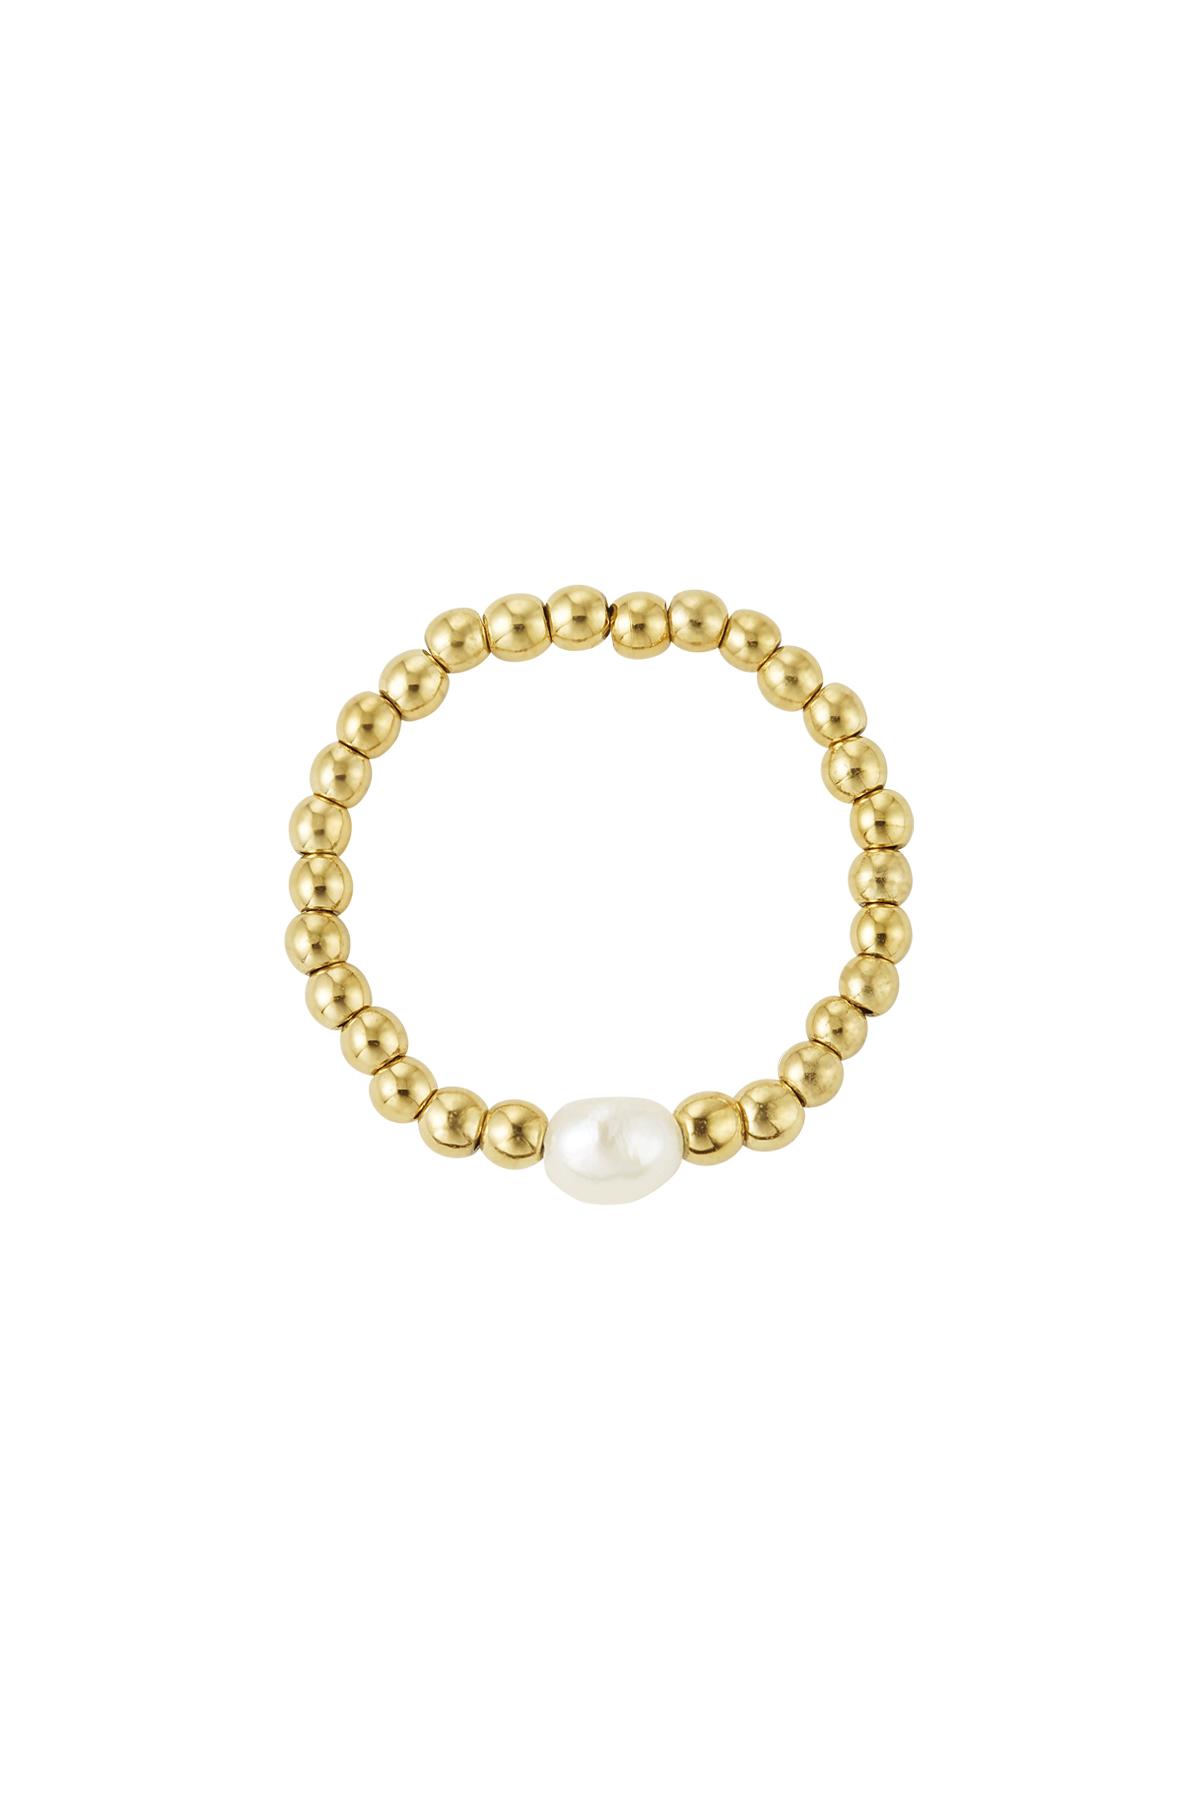 Anello elastico con perla Gold Pearls One size h5 